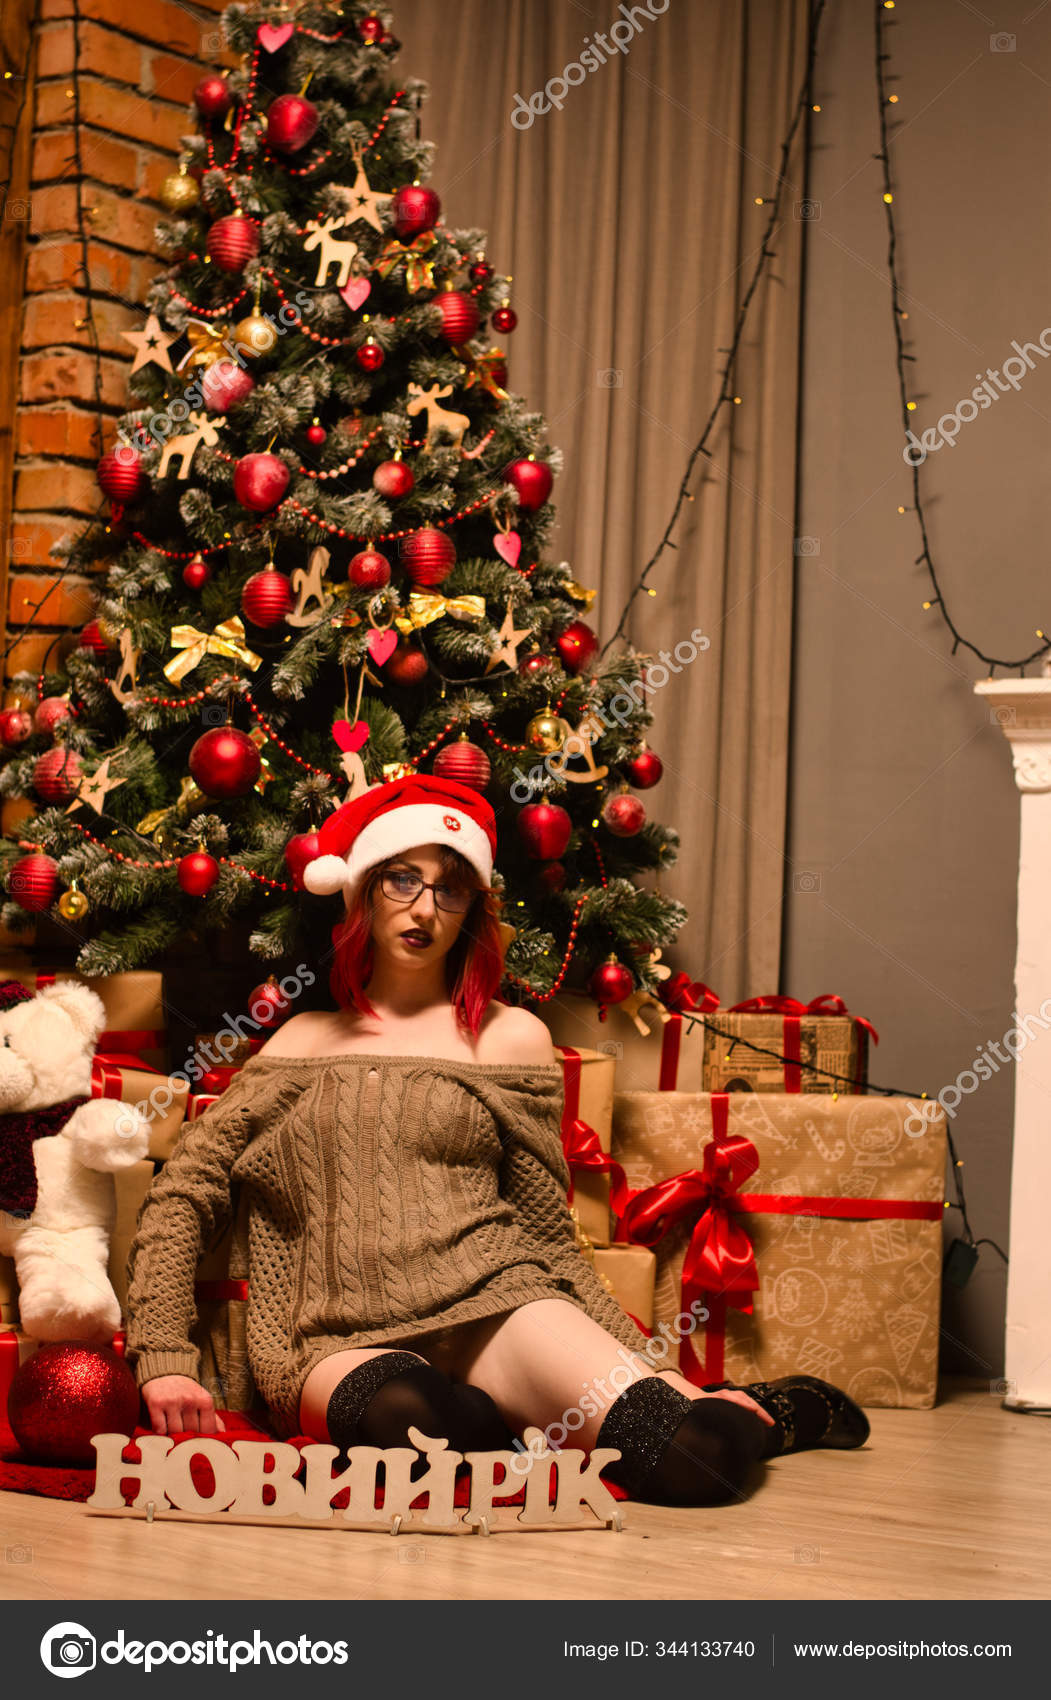 Голые девушки сексуально украшают новогоднюю елку в нижнем белье фото